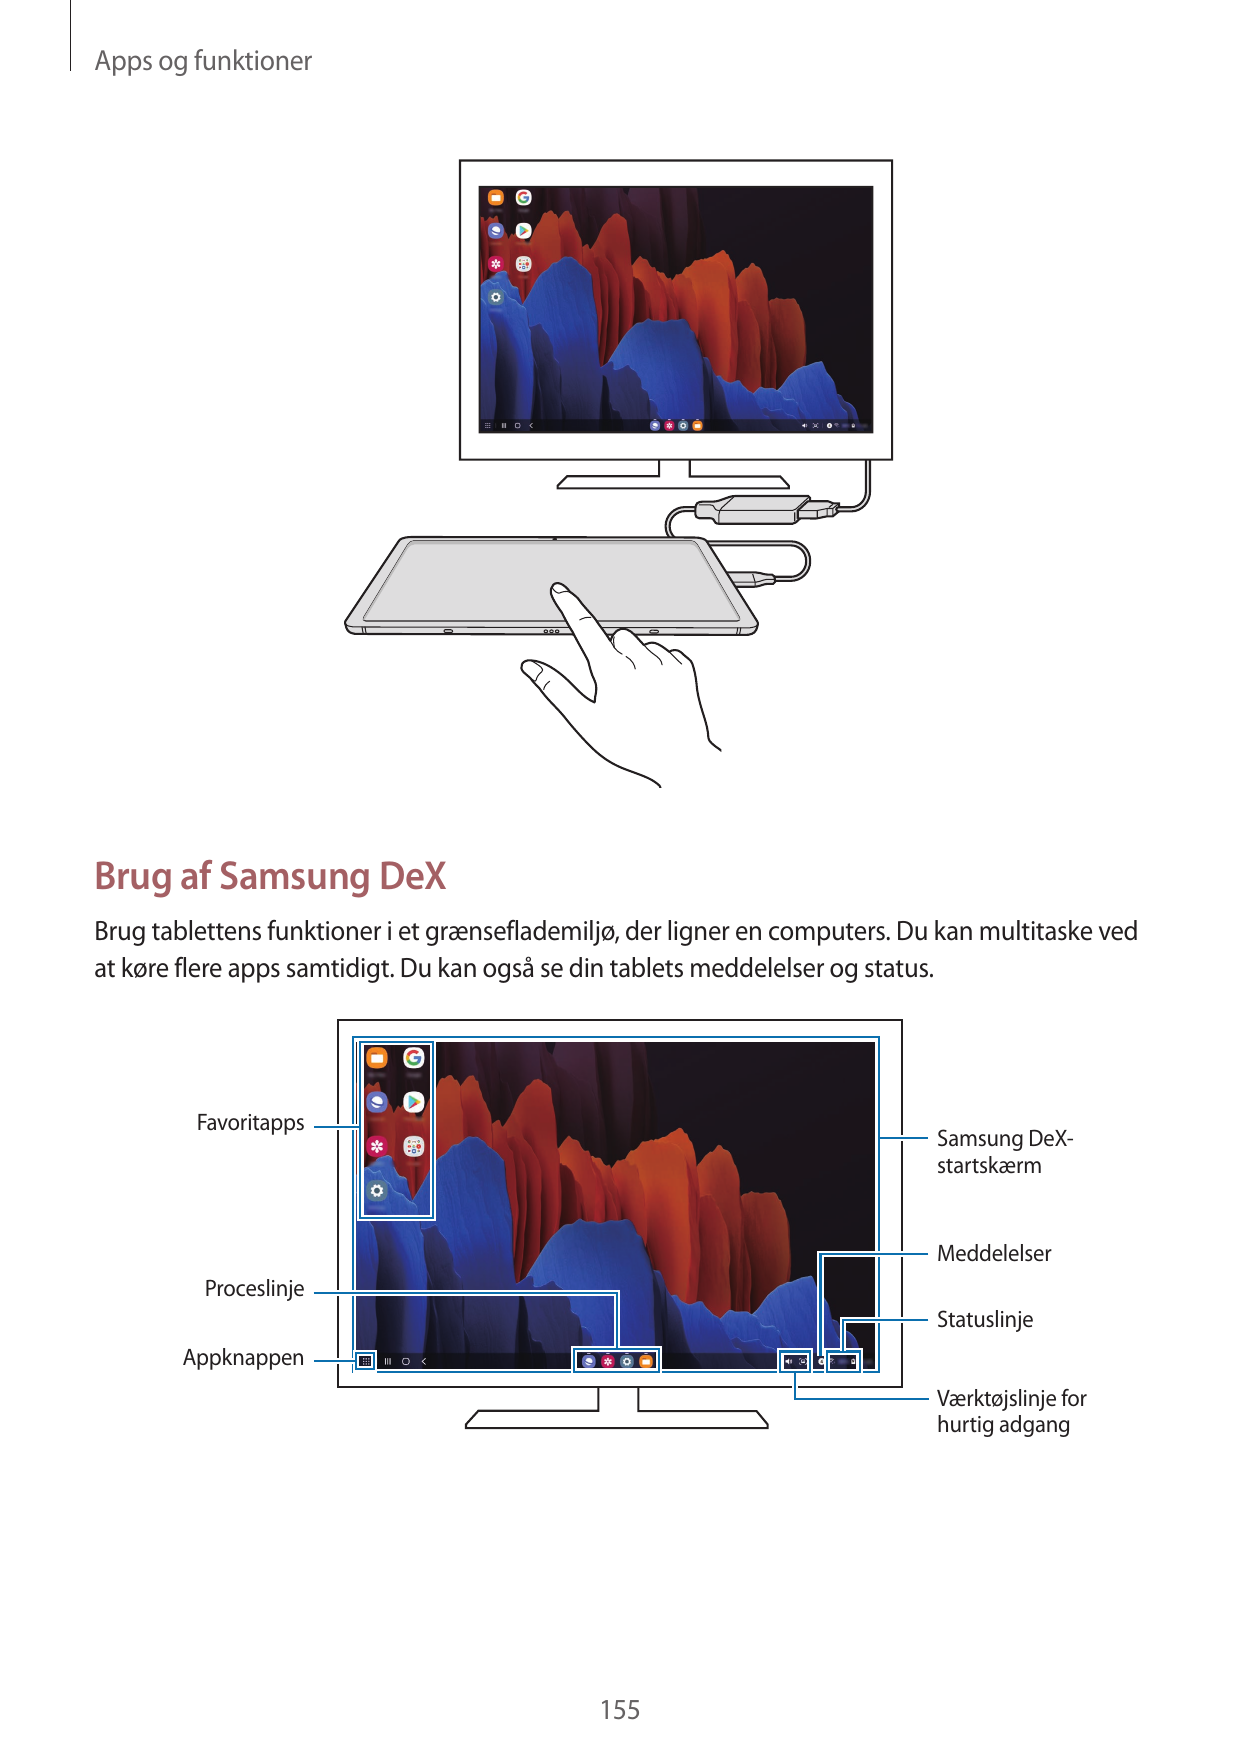 Apps og funktionerBrug af Samsung DeXBrug tablettens funktioner i et grænseflademiljø, der ligner en computers. Du kan multitask